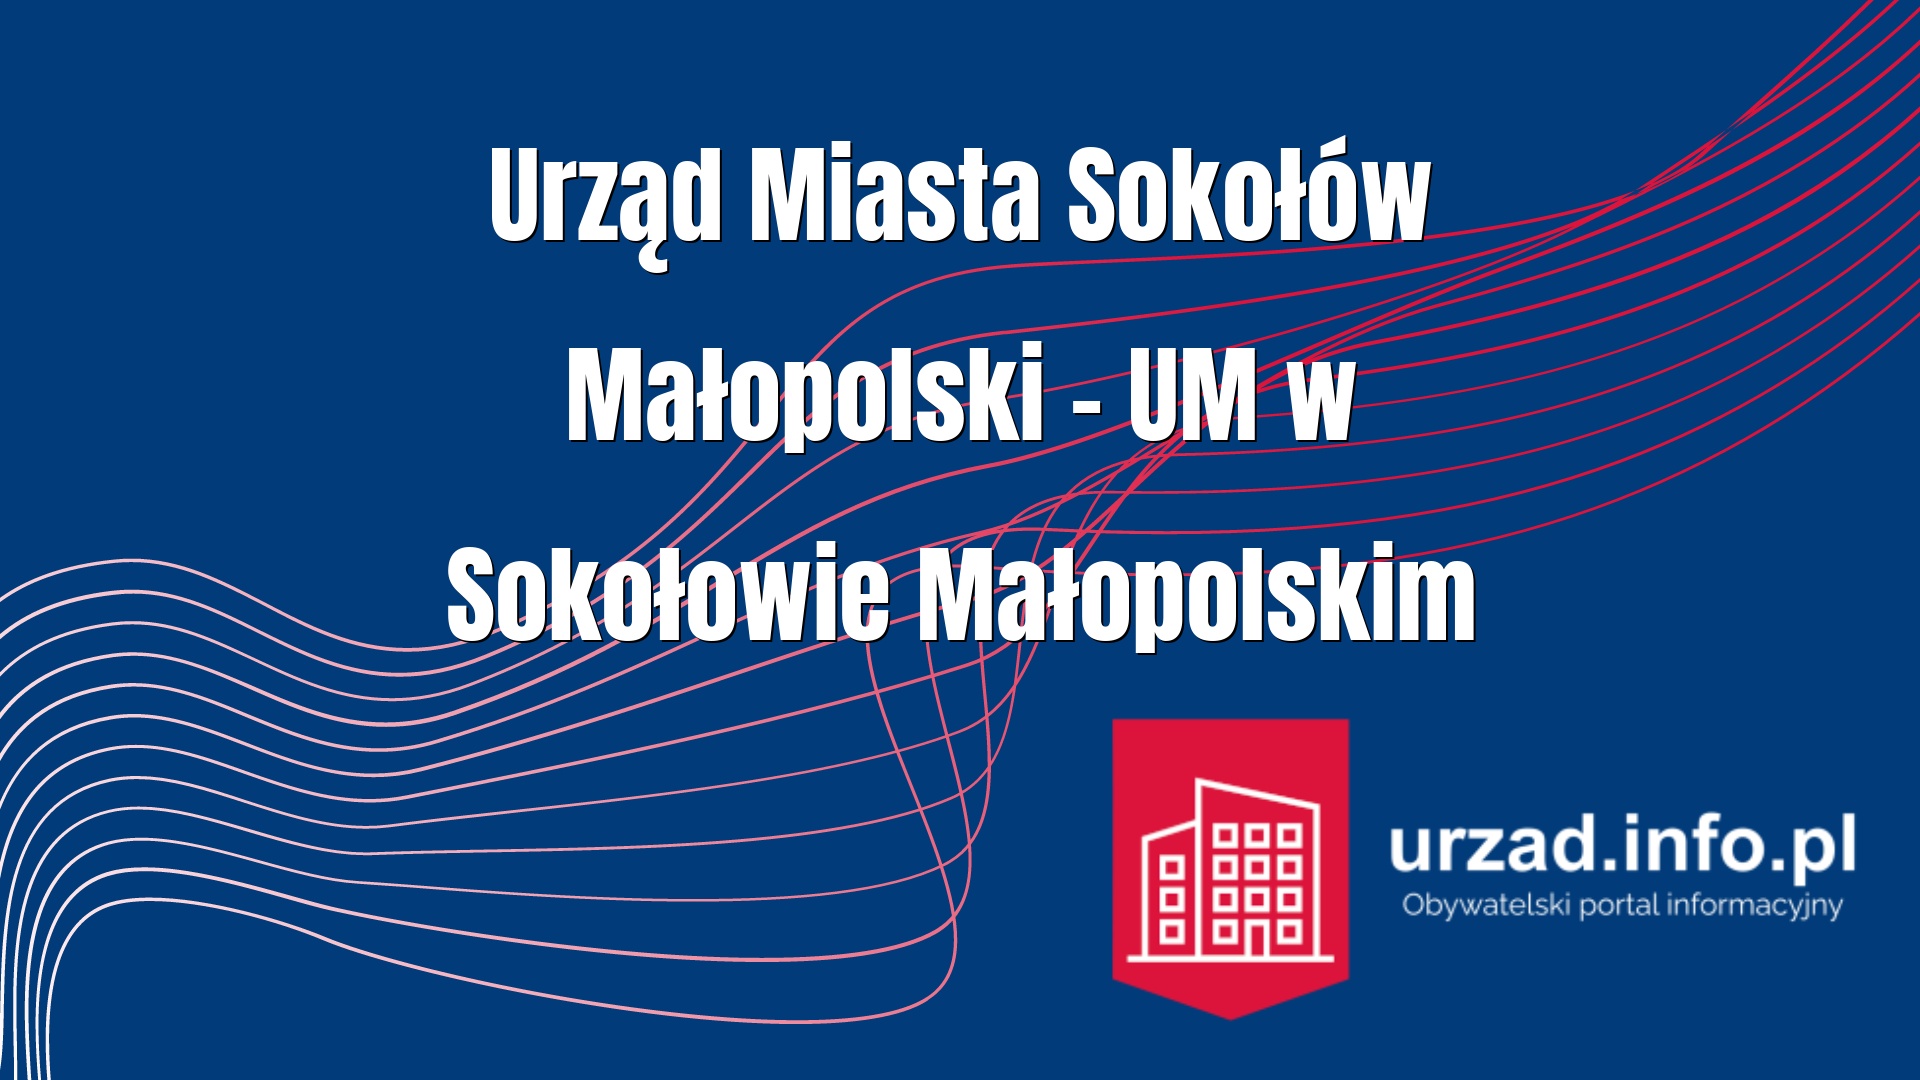 Urząd Miasta Sokołów Małopolski – UM w Sokołowie Małopolskim